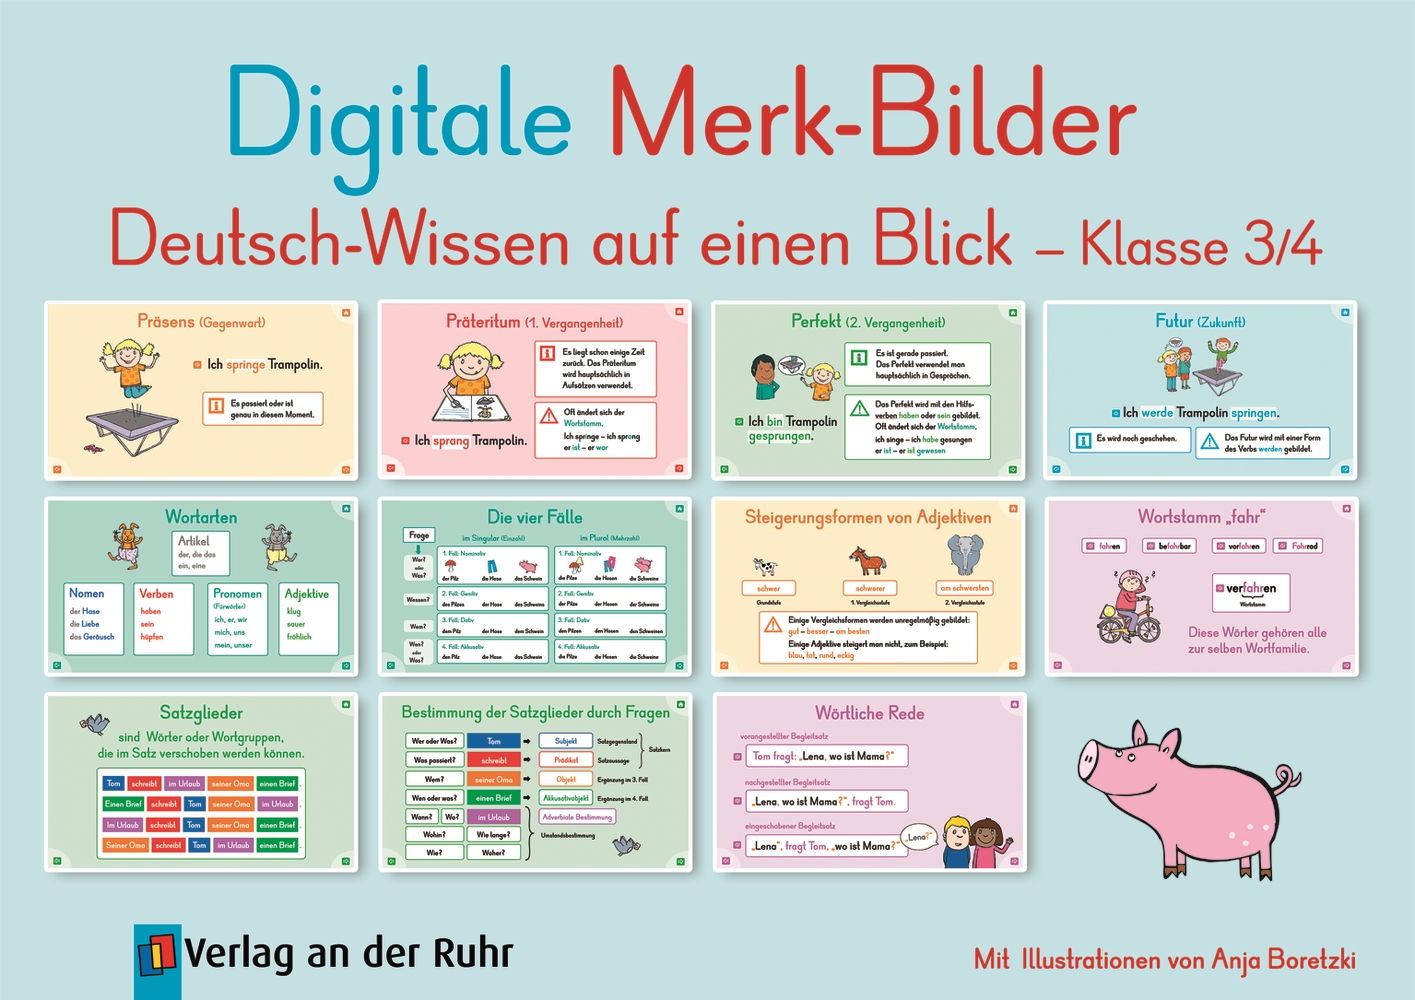 Digitale Merk-Bilder - Deutsch-Wissen auf einen Blick, Klasse 3/4 - Premium-Lizenz - Online